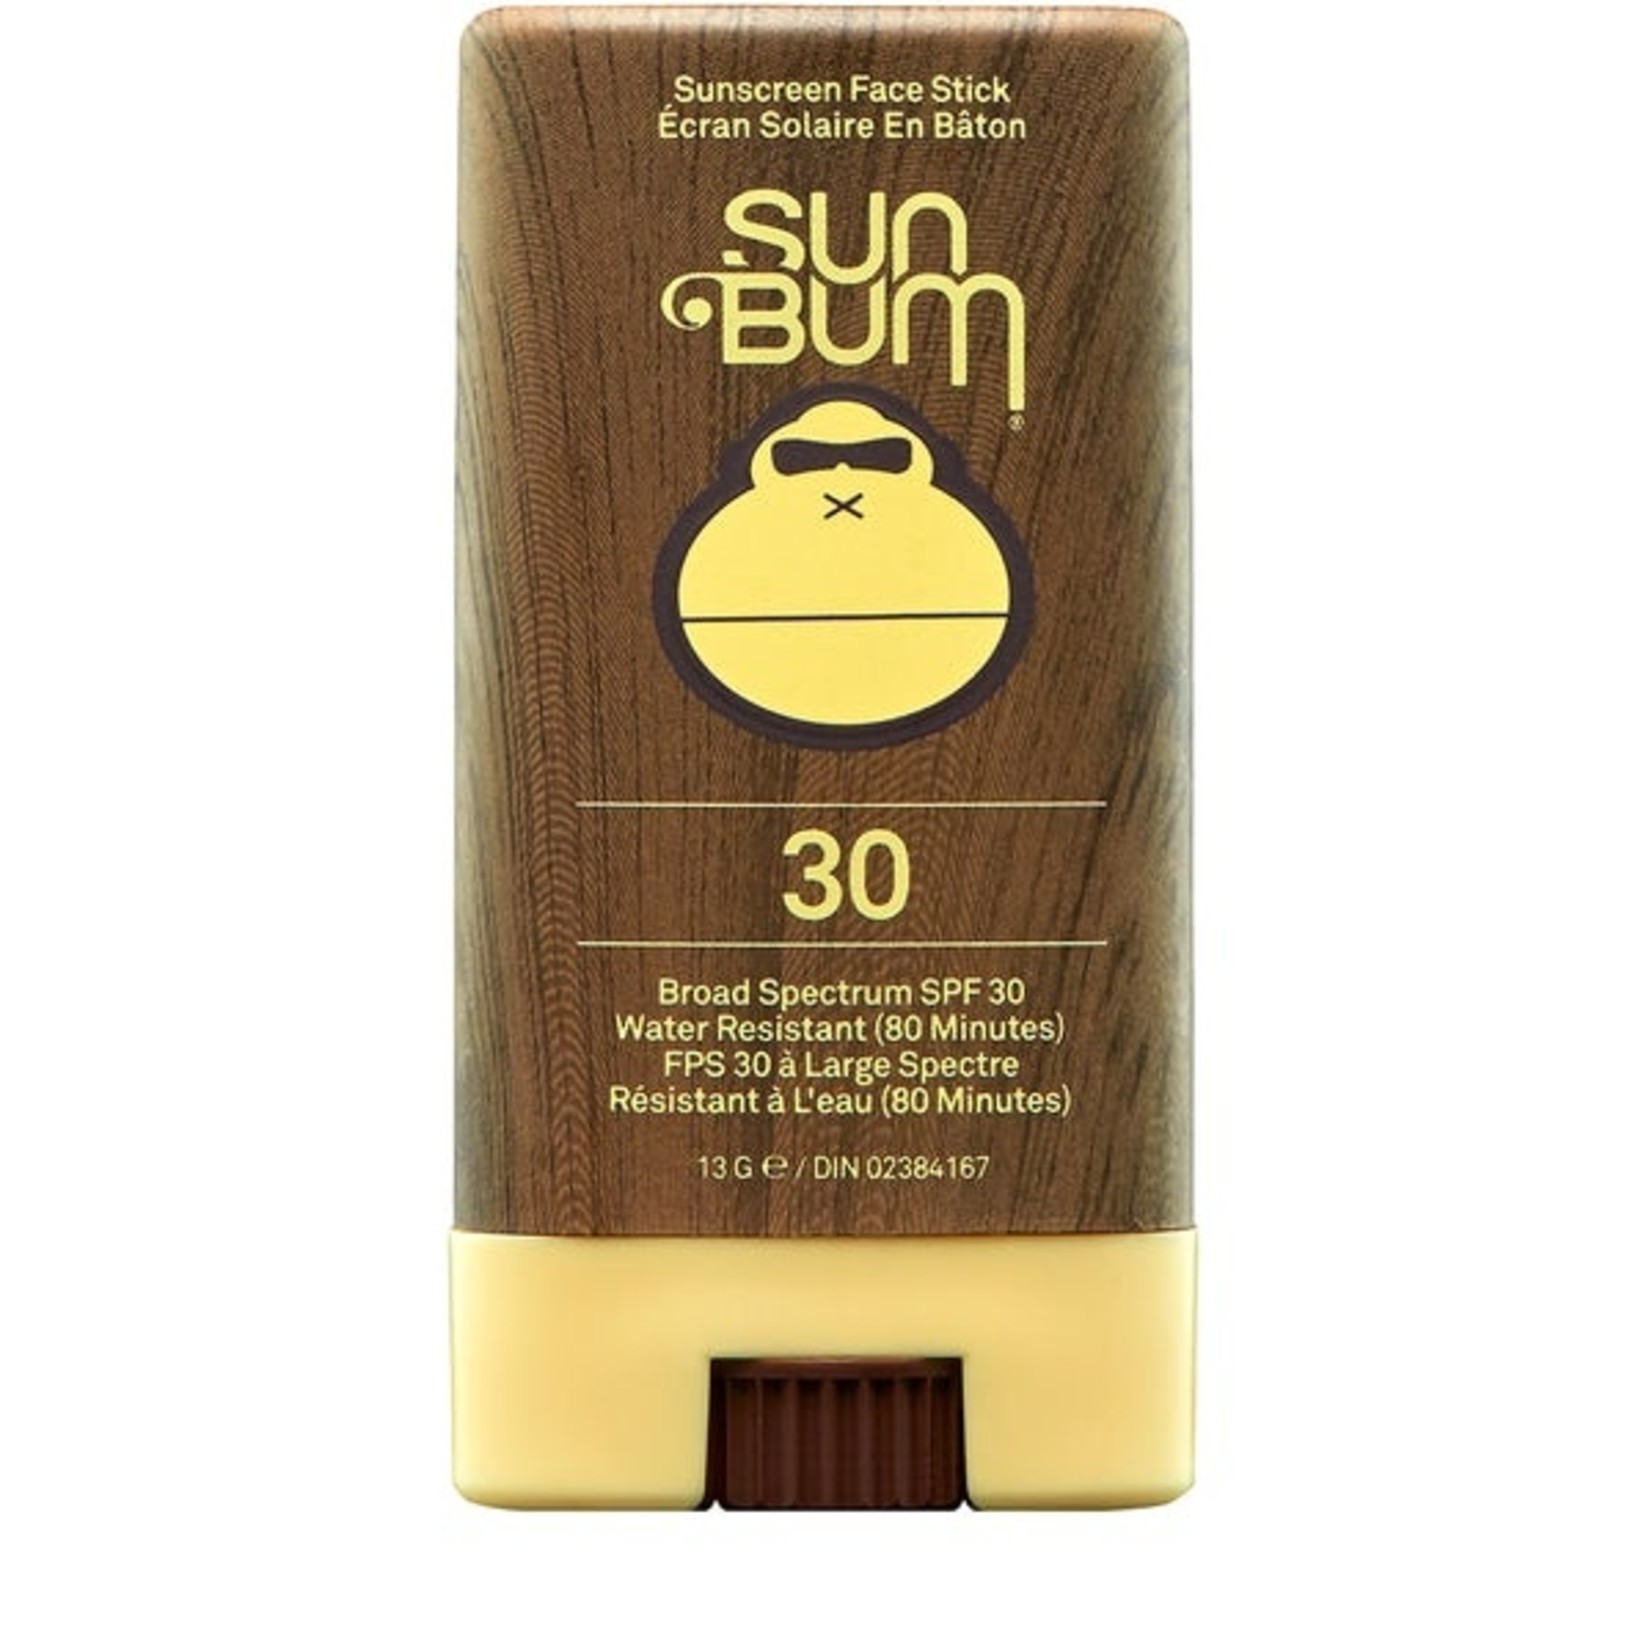 SUN BUM Original Face Stick SPF 30